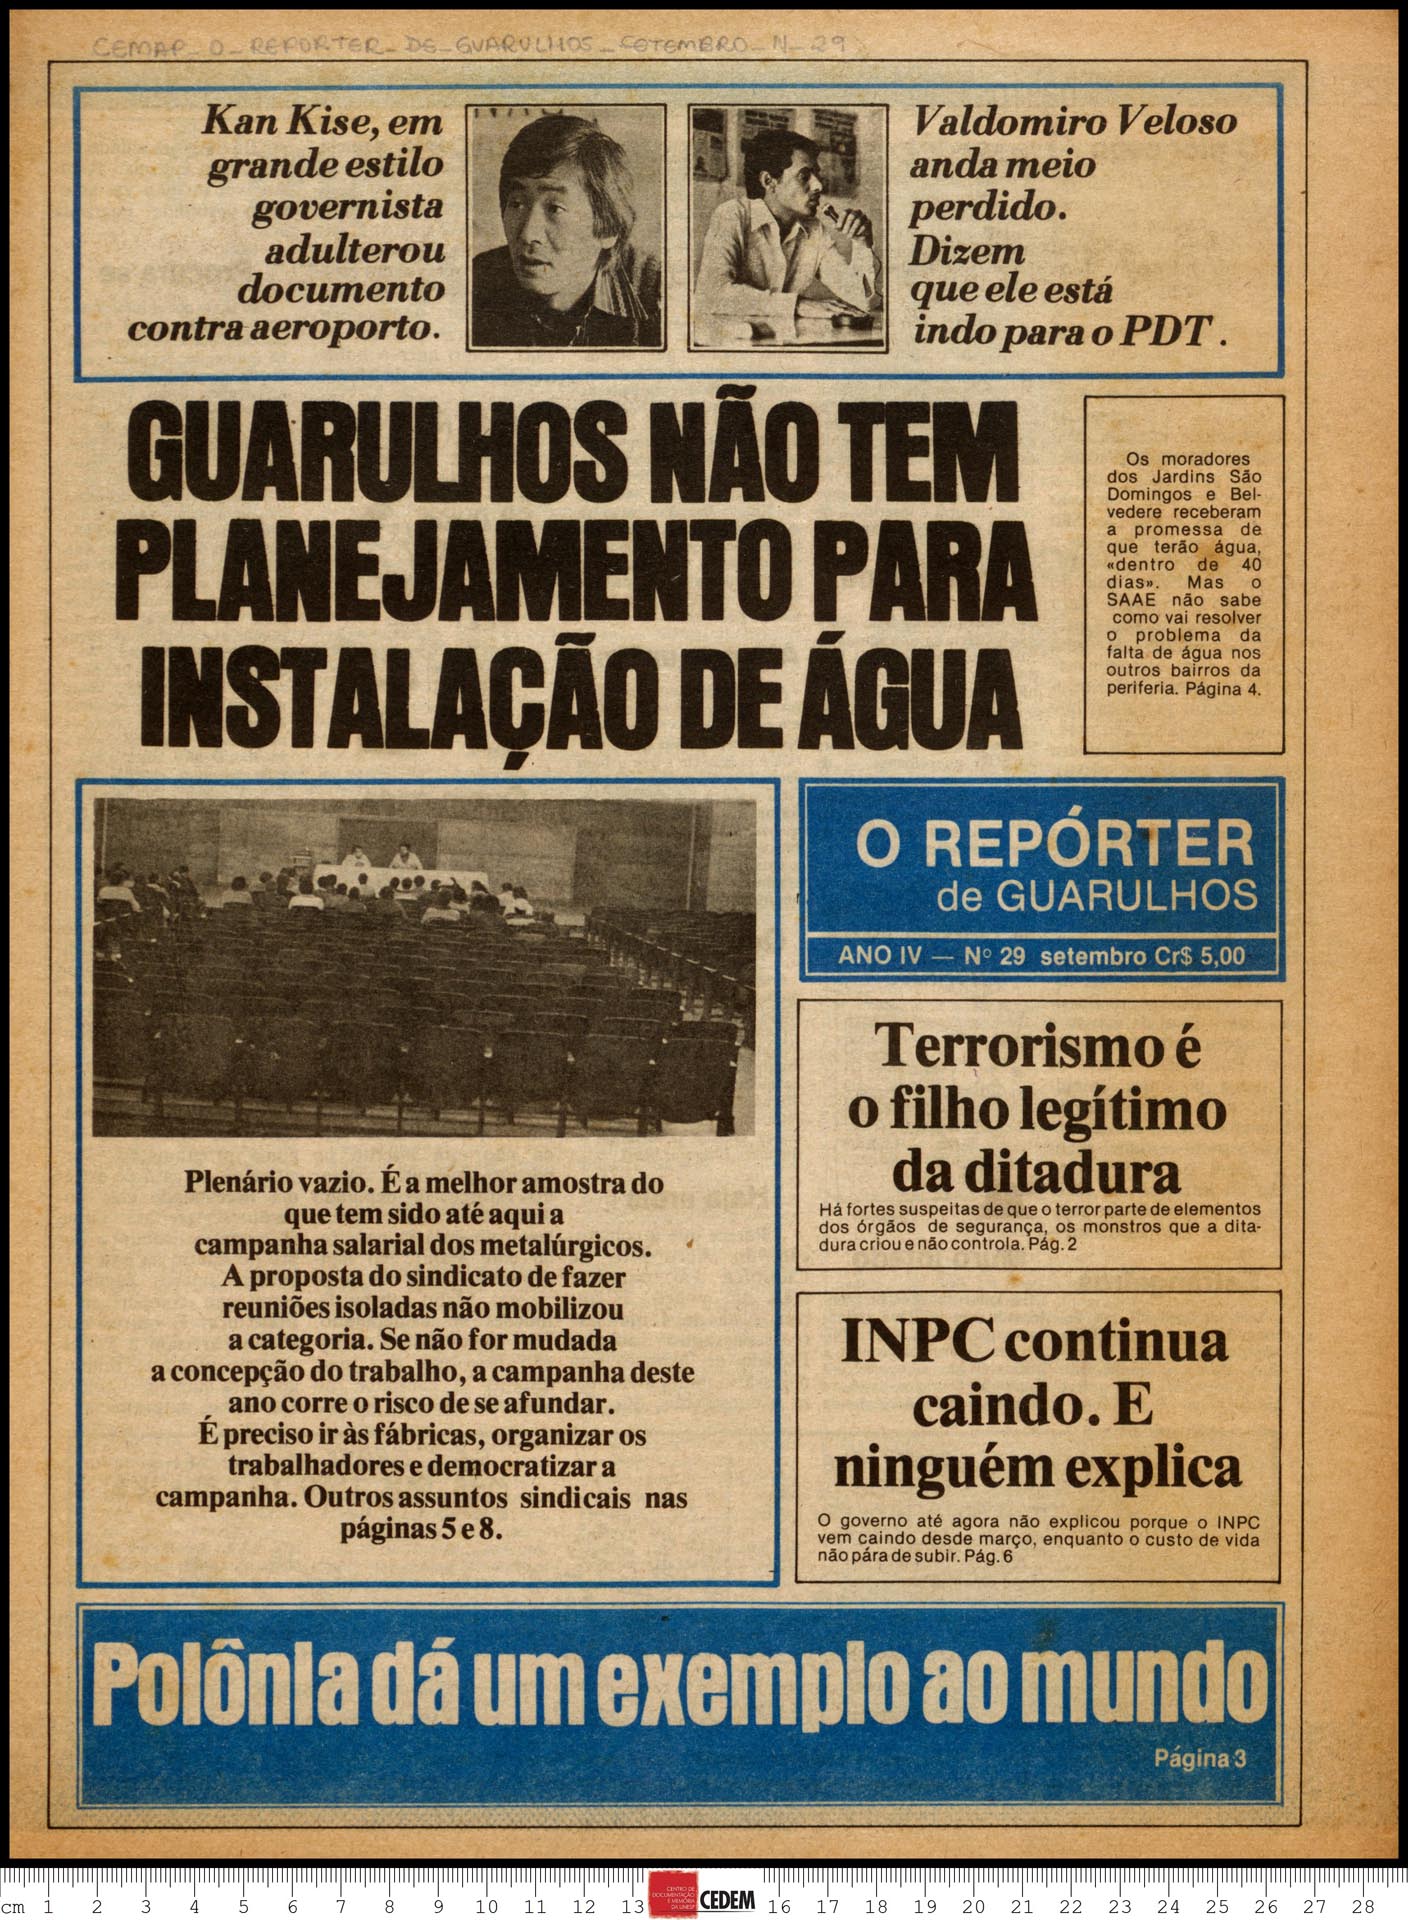 O reportér de Guarulhos - 29 - set. 1980